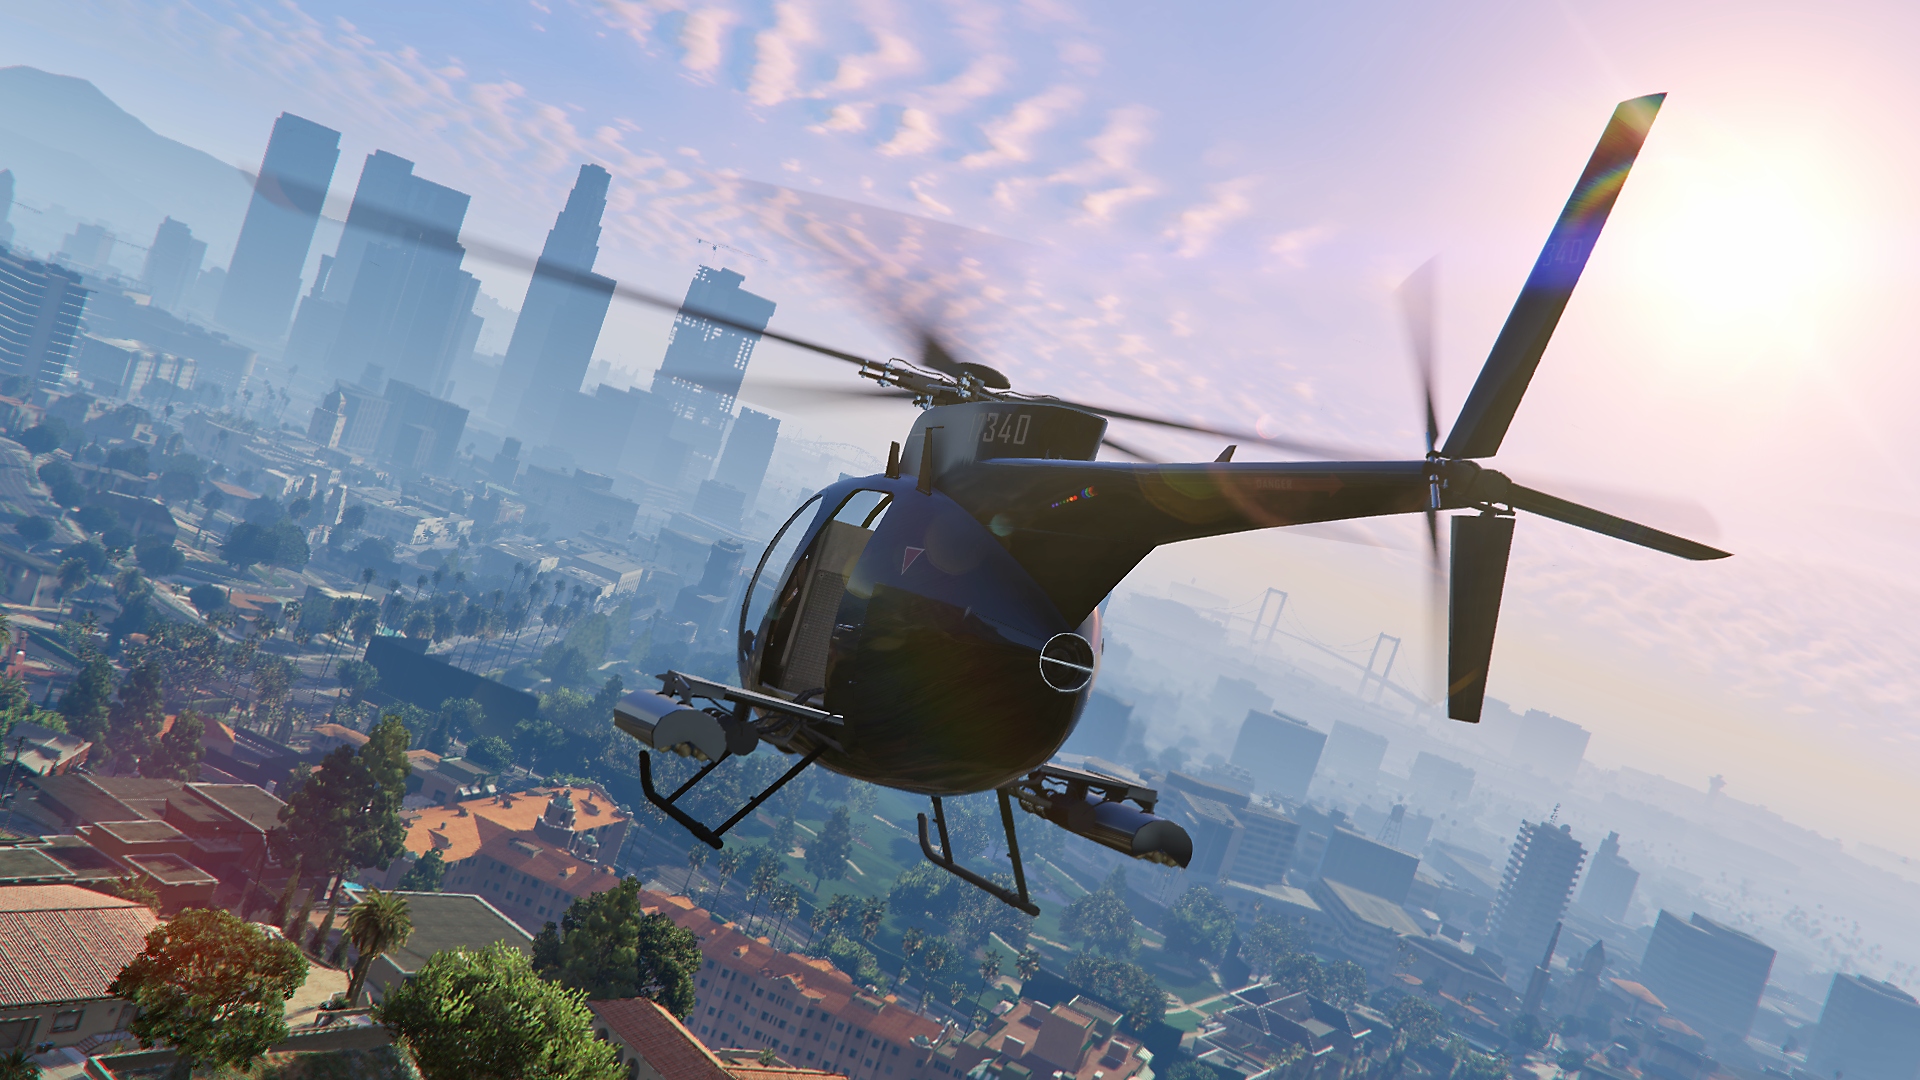 Grand Theft Auto V-screenshot van een vliegende helikopter, met op afstand een uitzicht over de stad